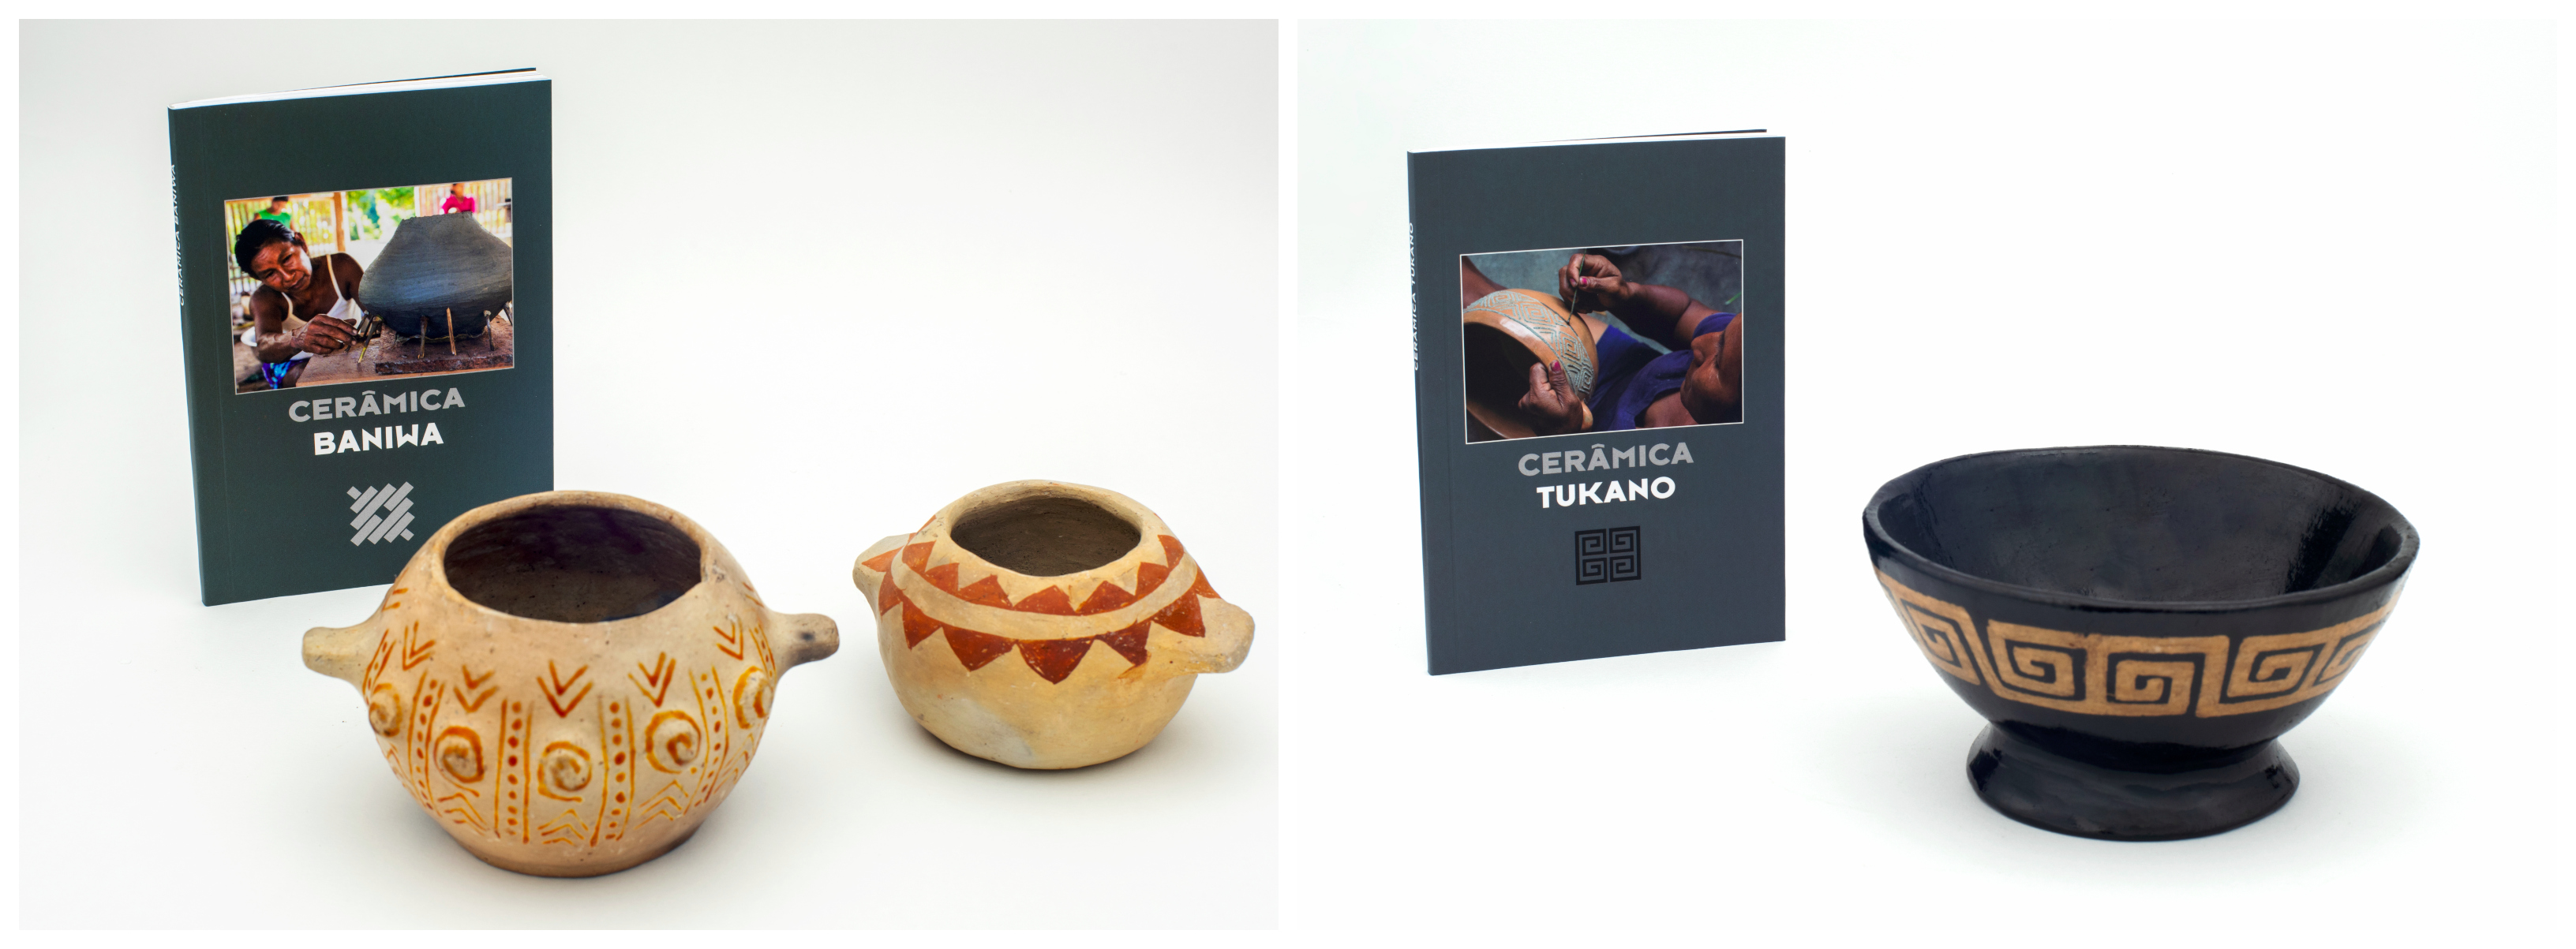 Livros de cerâmicas Tukano e Baniwa